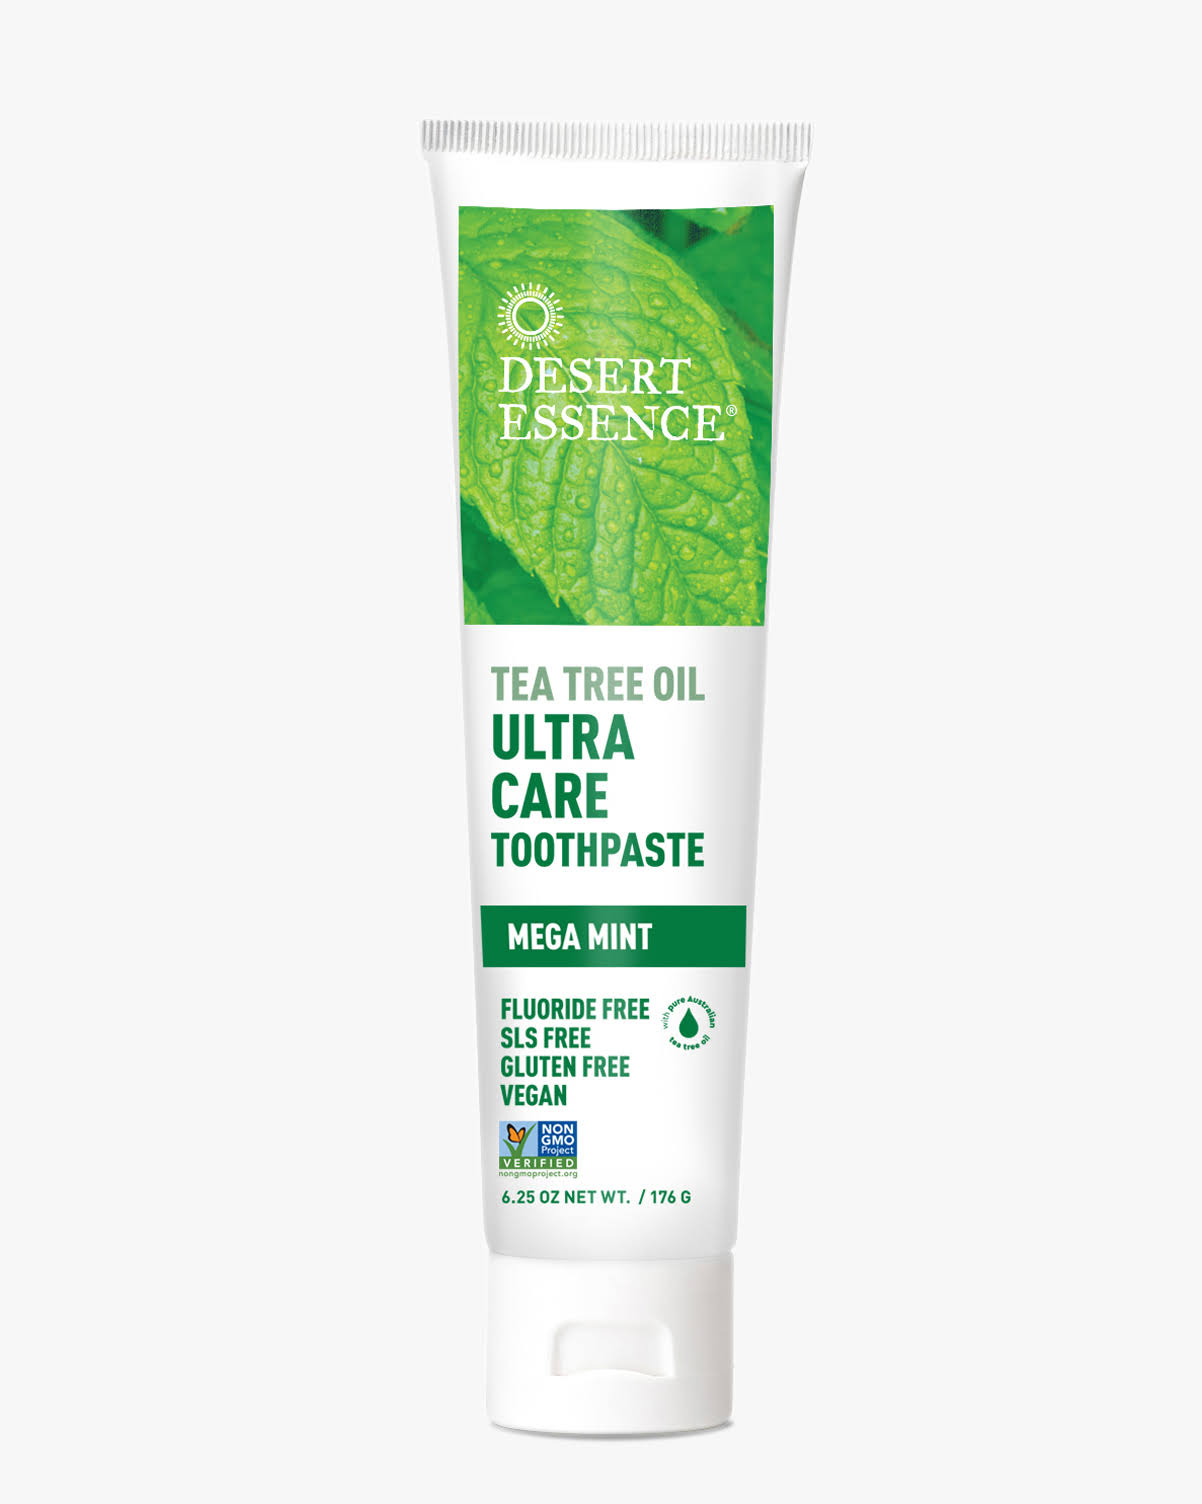 Desert Essence Toothpaste - Tea Tree Oil, Mega Mint